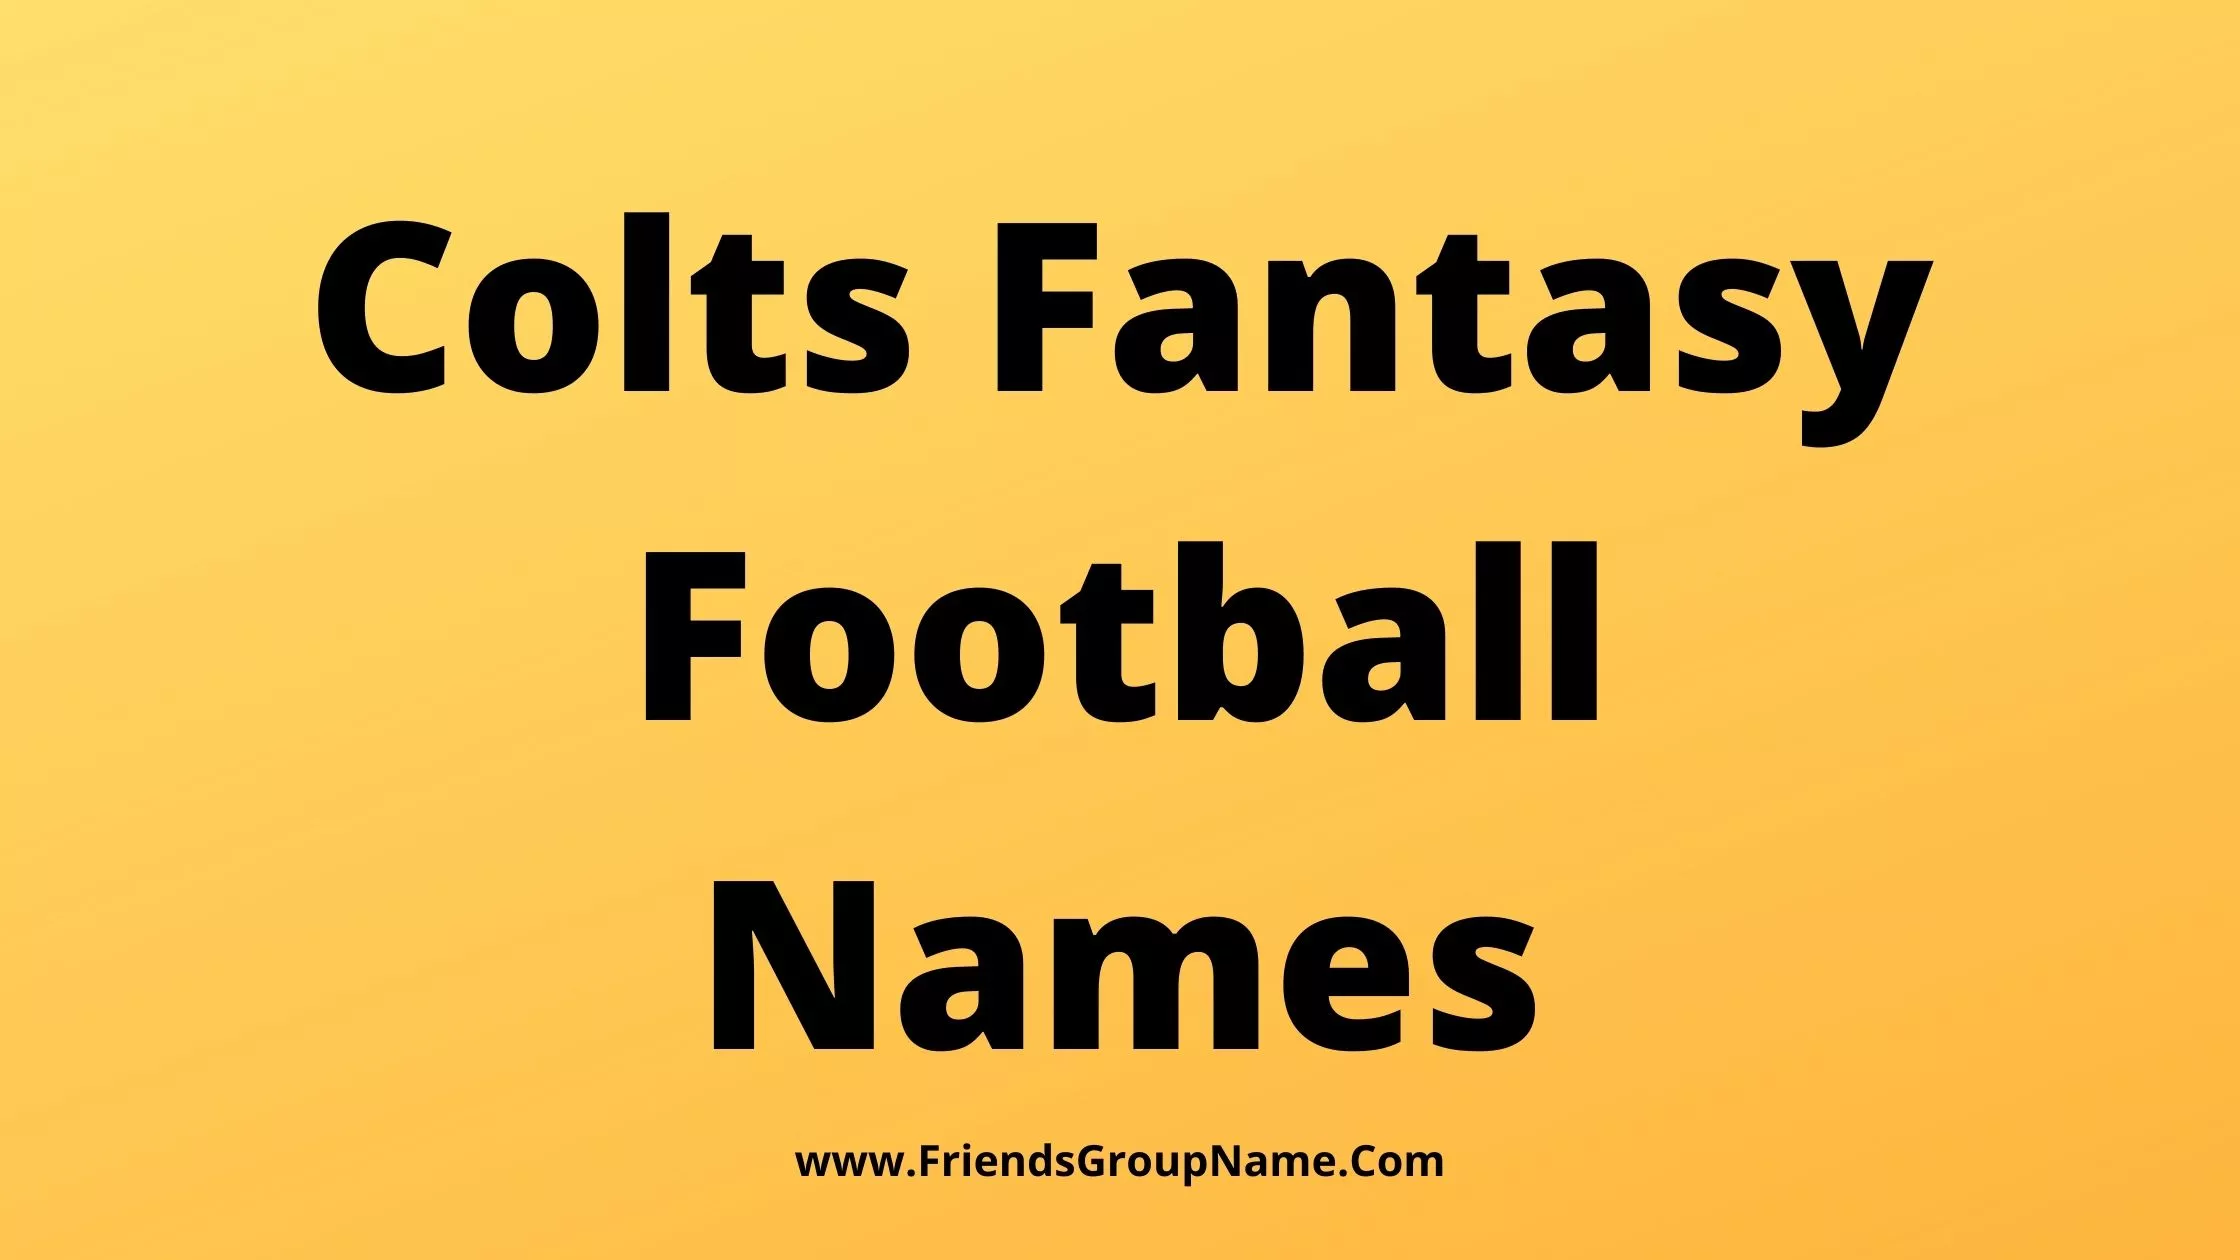 Colts Fantasy Football Names